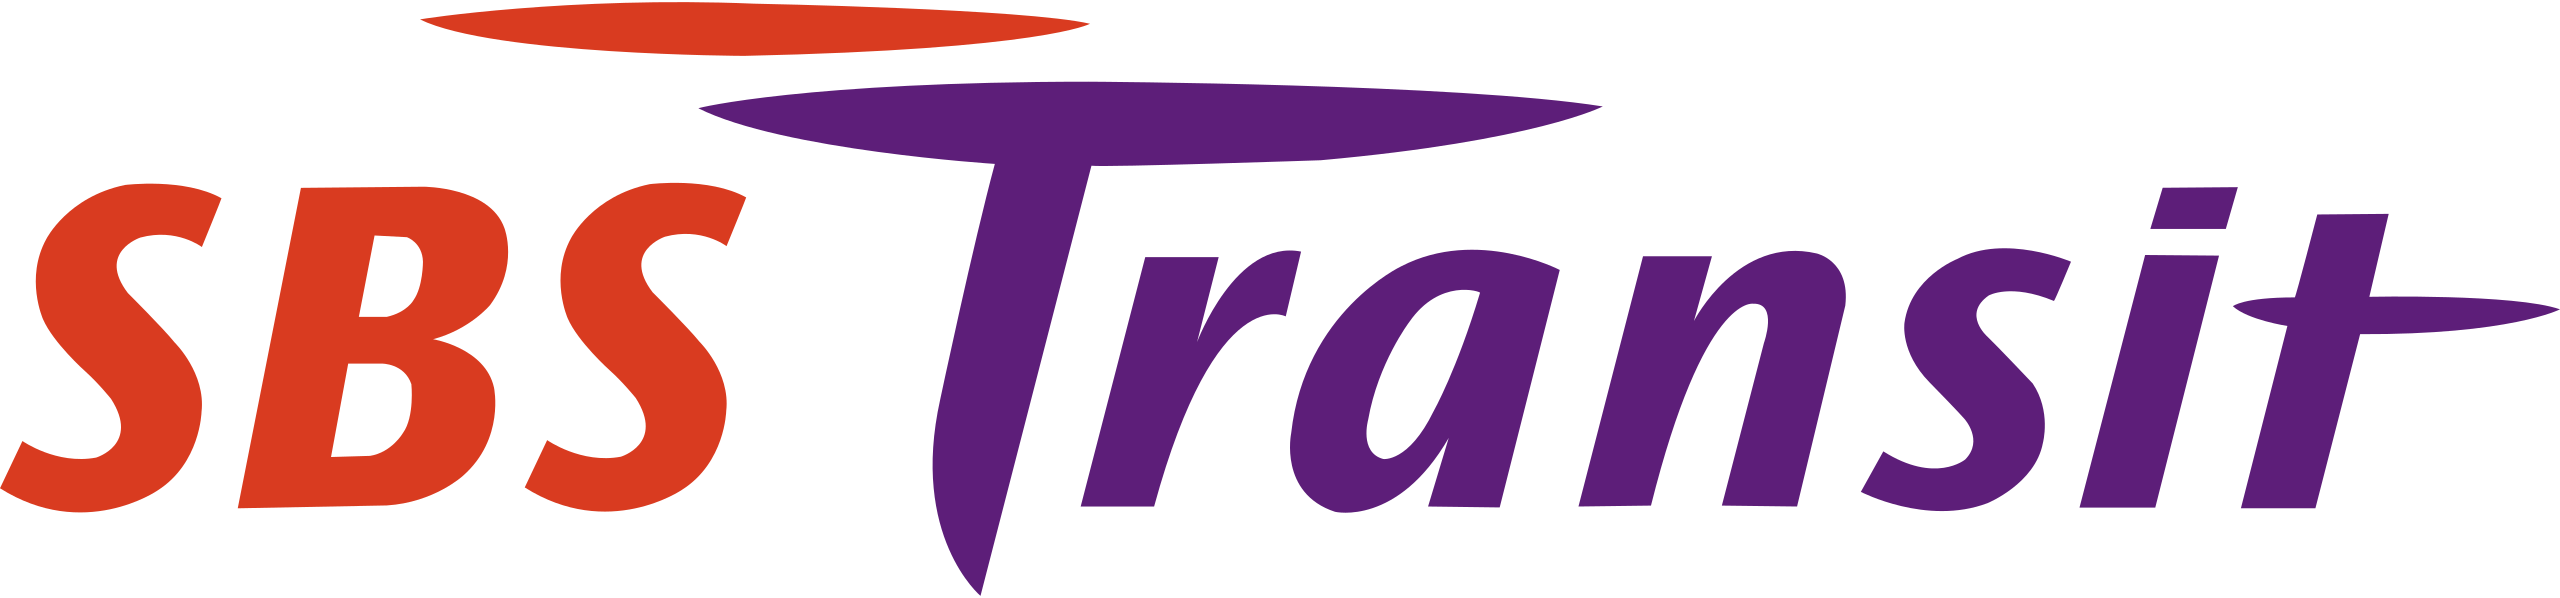 SBS_Transit_logo.svg
                    